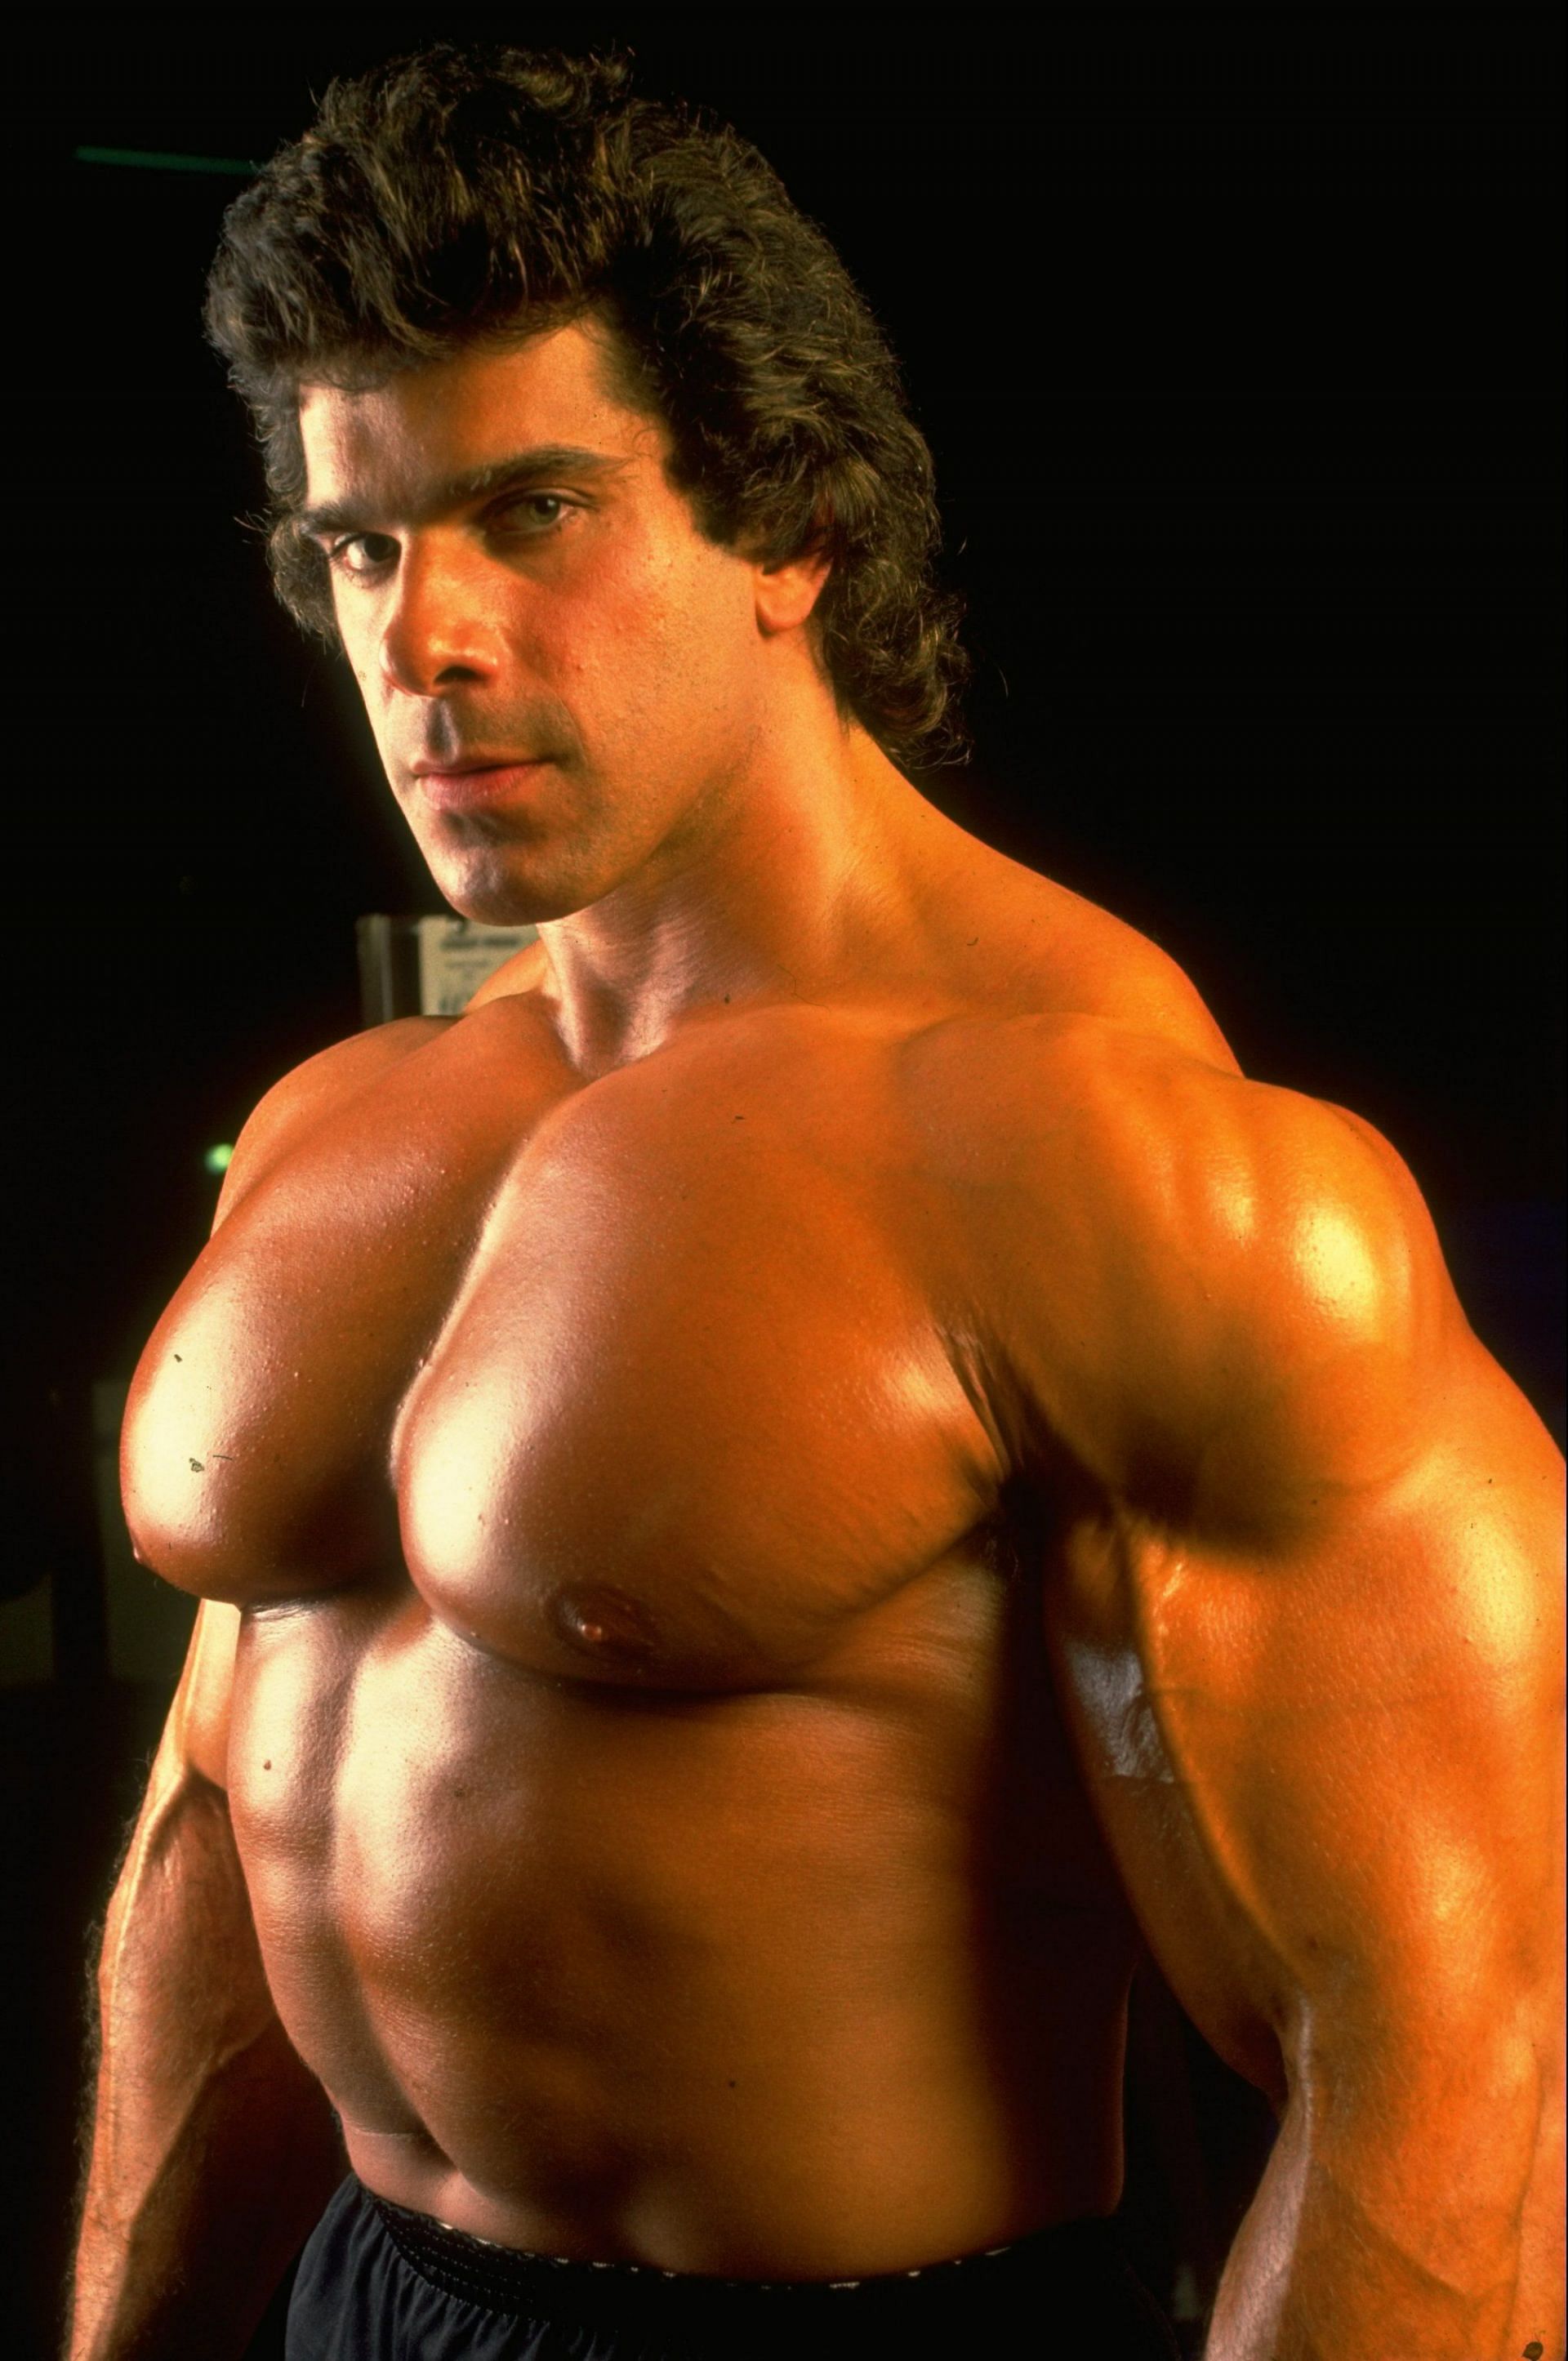 Lou Ferrigno aka The Incredible Hulk, 1988